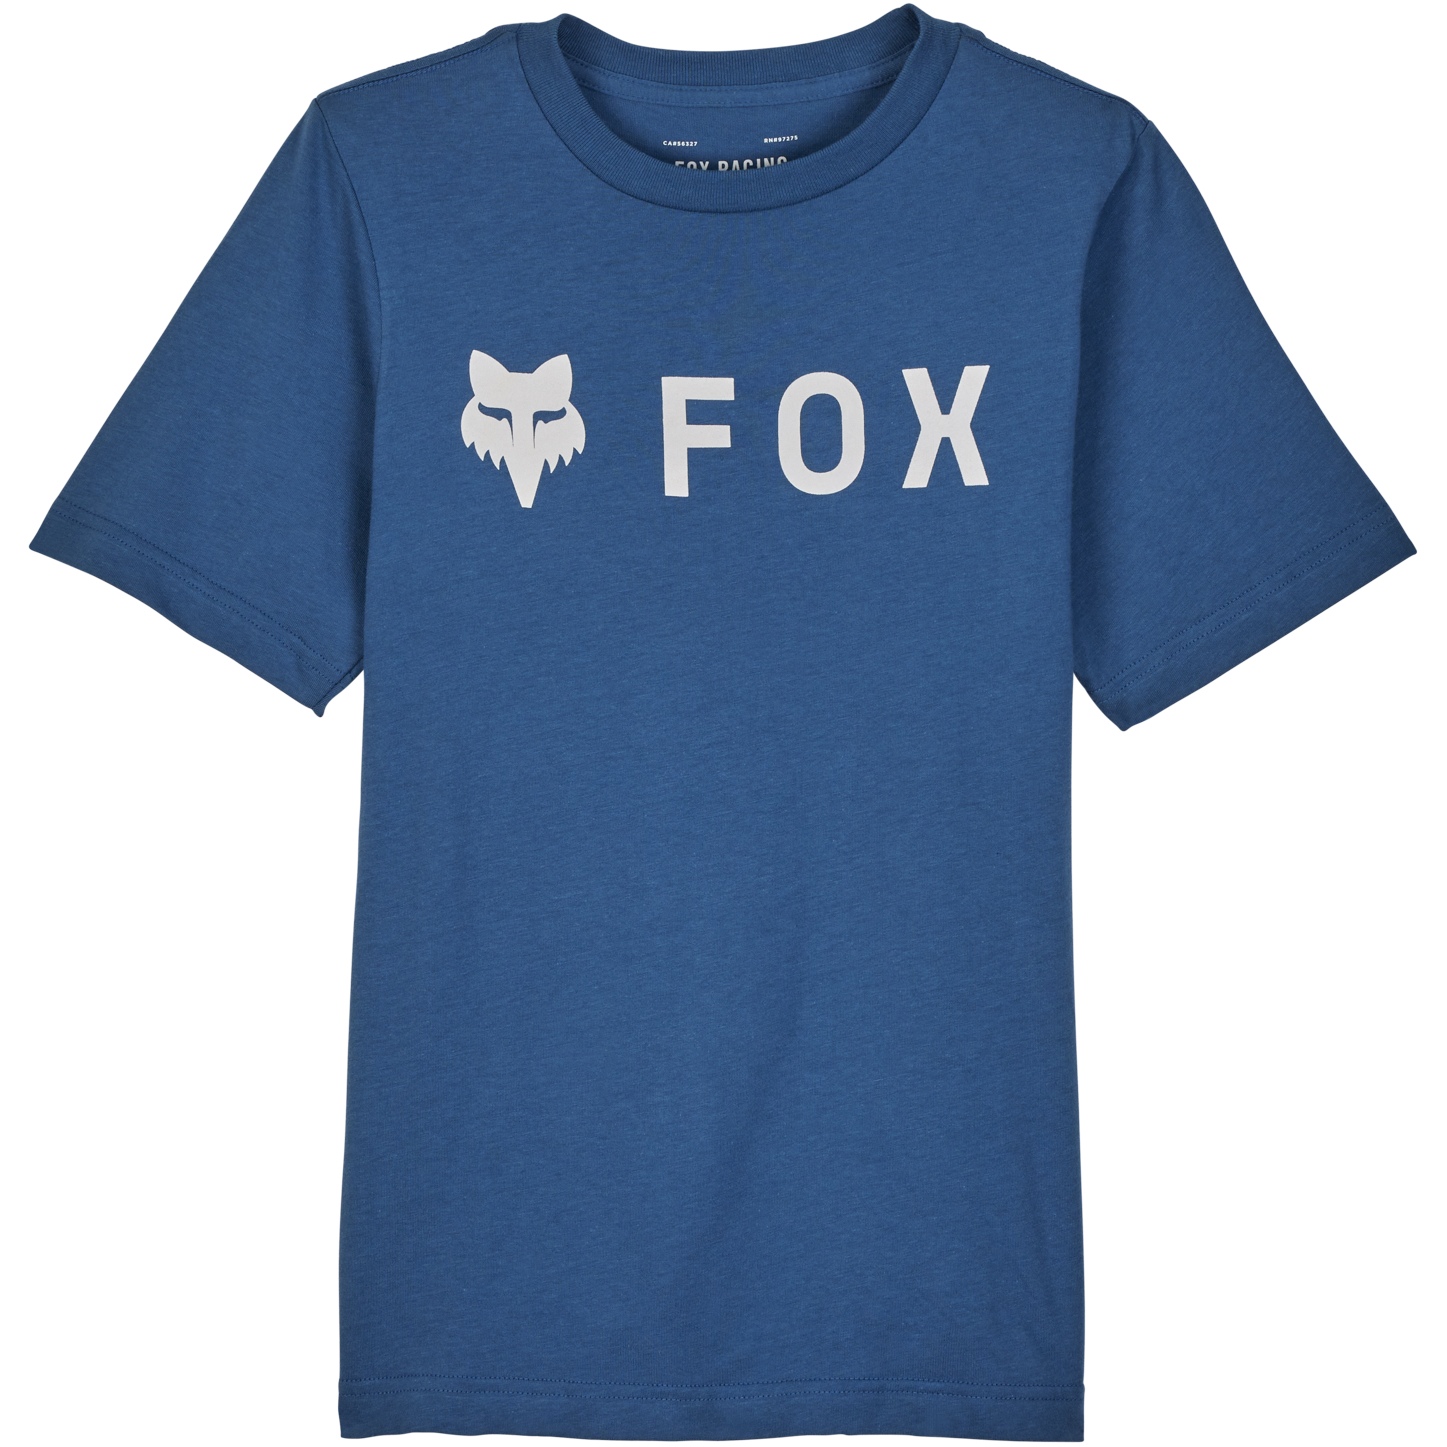 Produktbild von FOX Absolute Kurzarmshirt Kinder - indigo